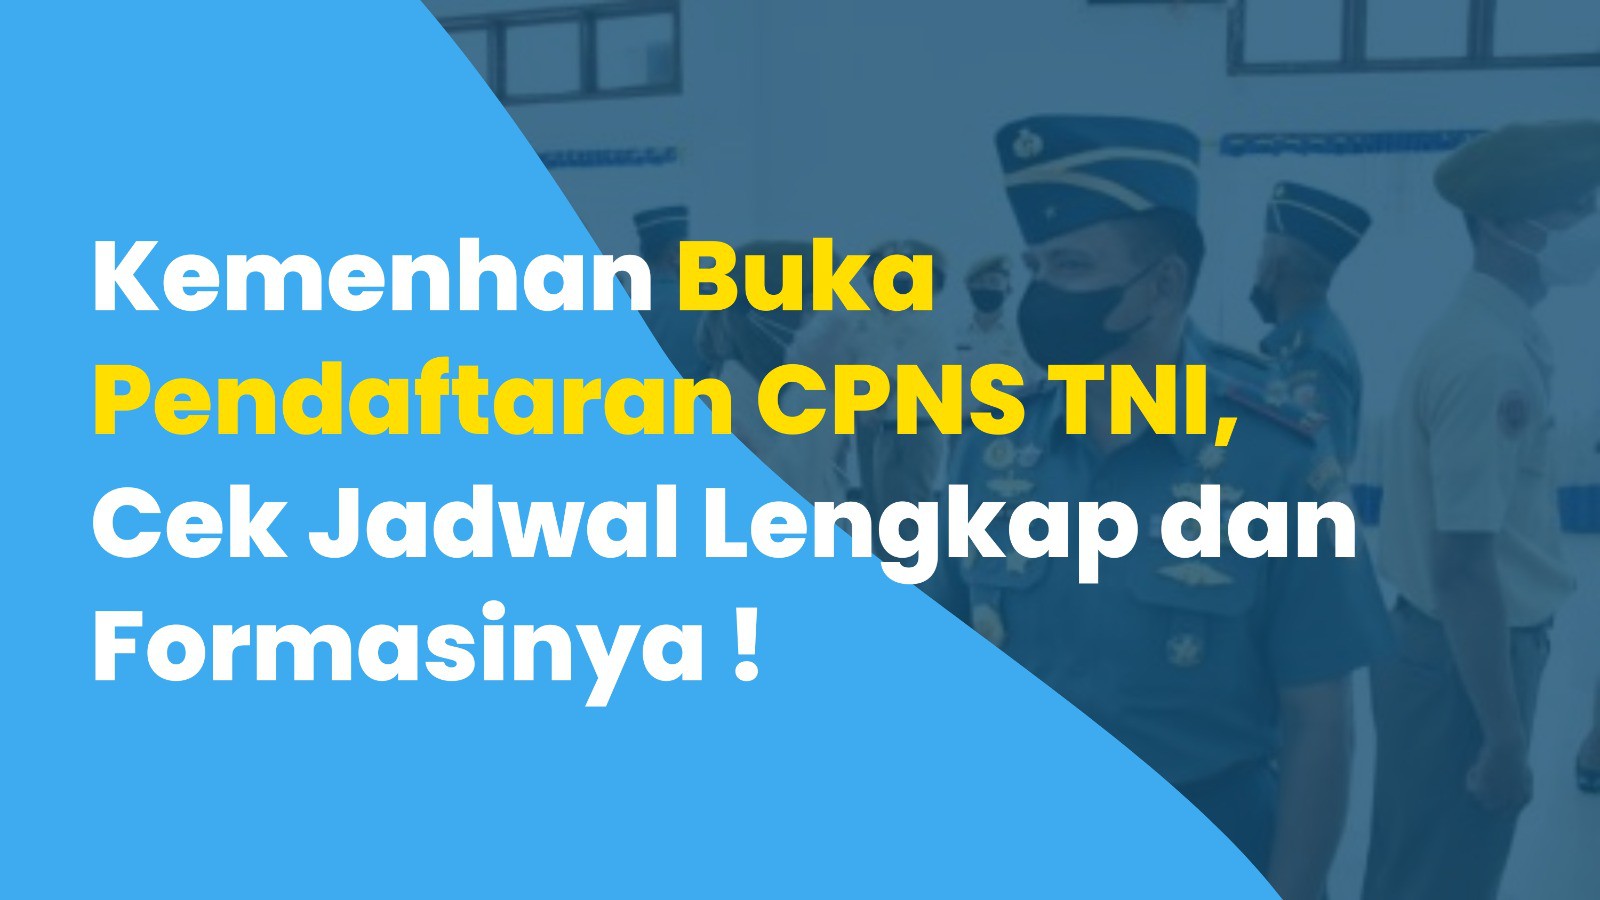 Kemenhan Buka Pendaftaran CPNS TNI, Cek Jadwal Lengkap dan Formasinya !